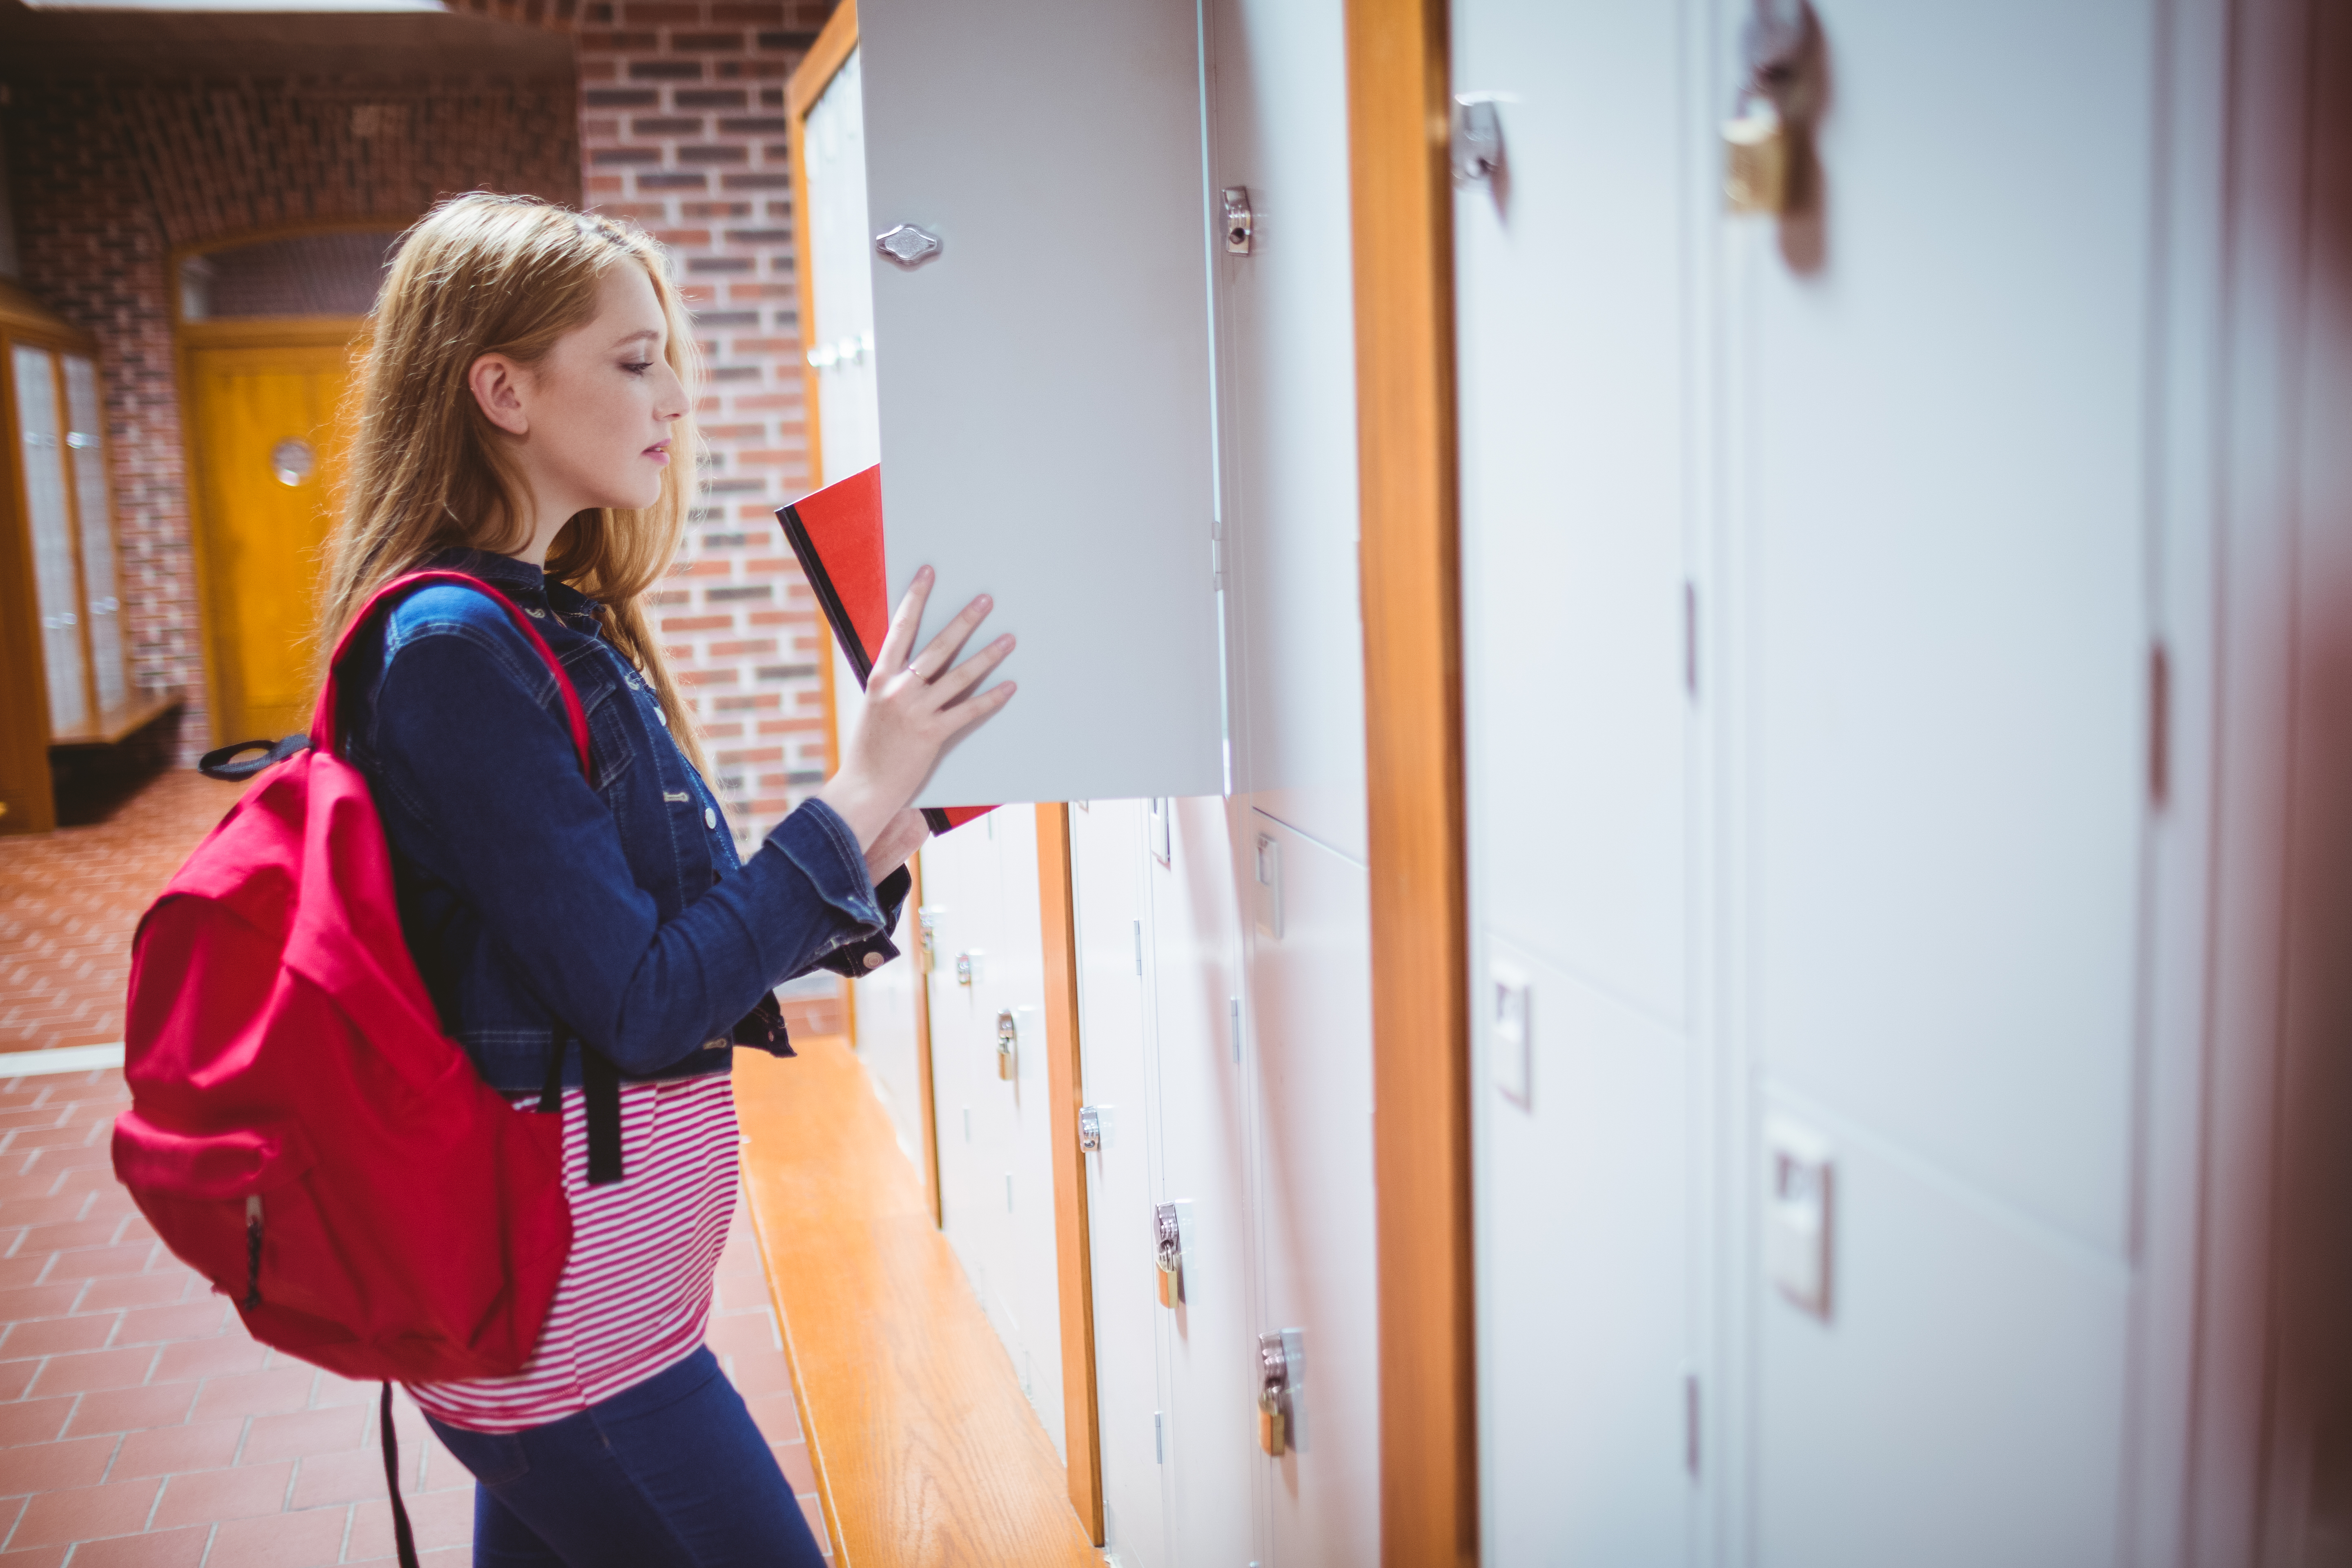 Une étudiante rangeant des livres dans un casier | Source : Shutterstock